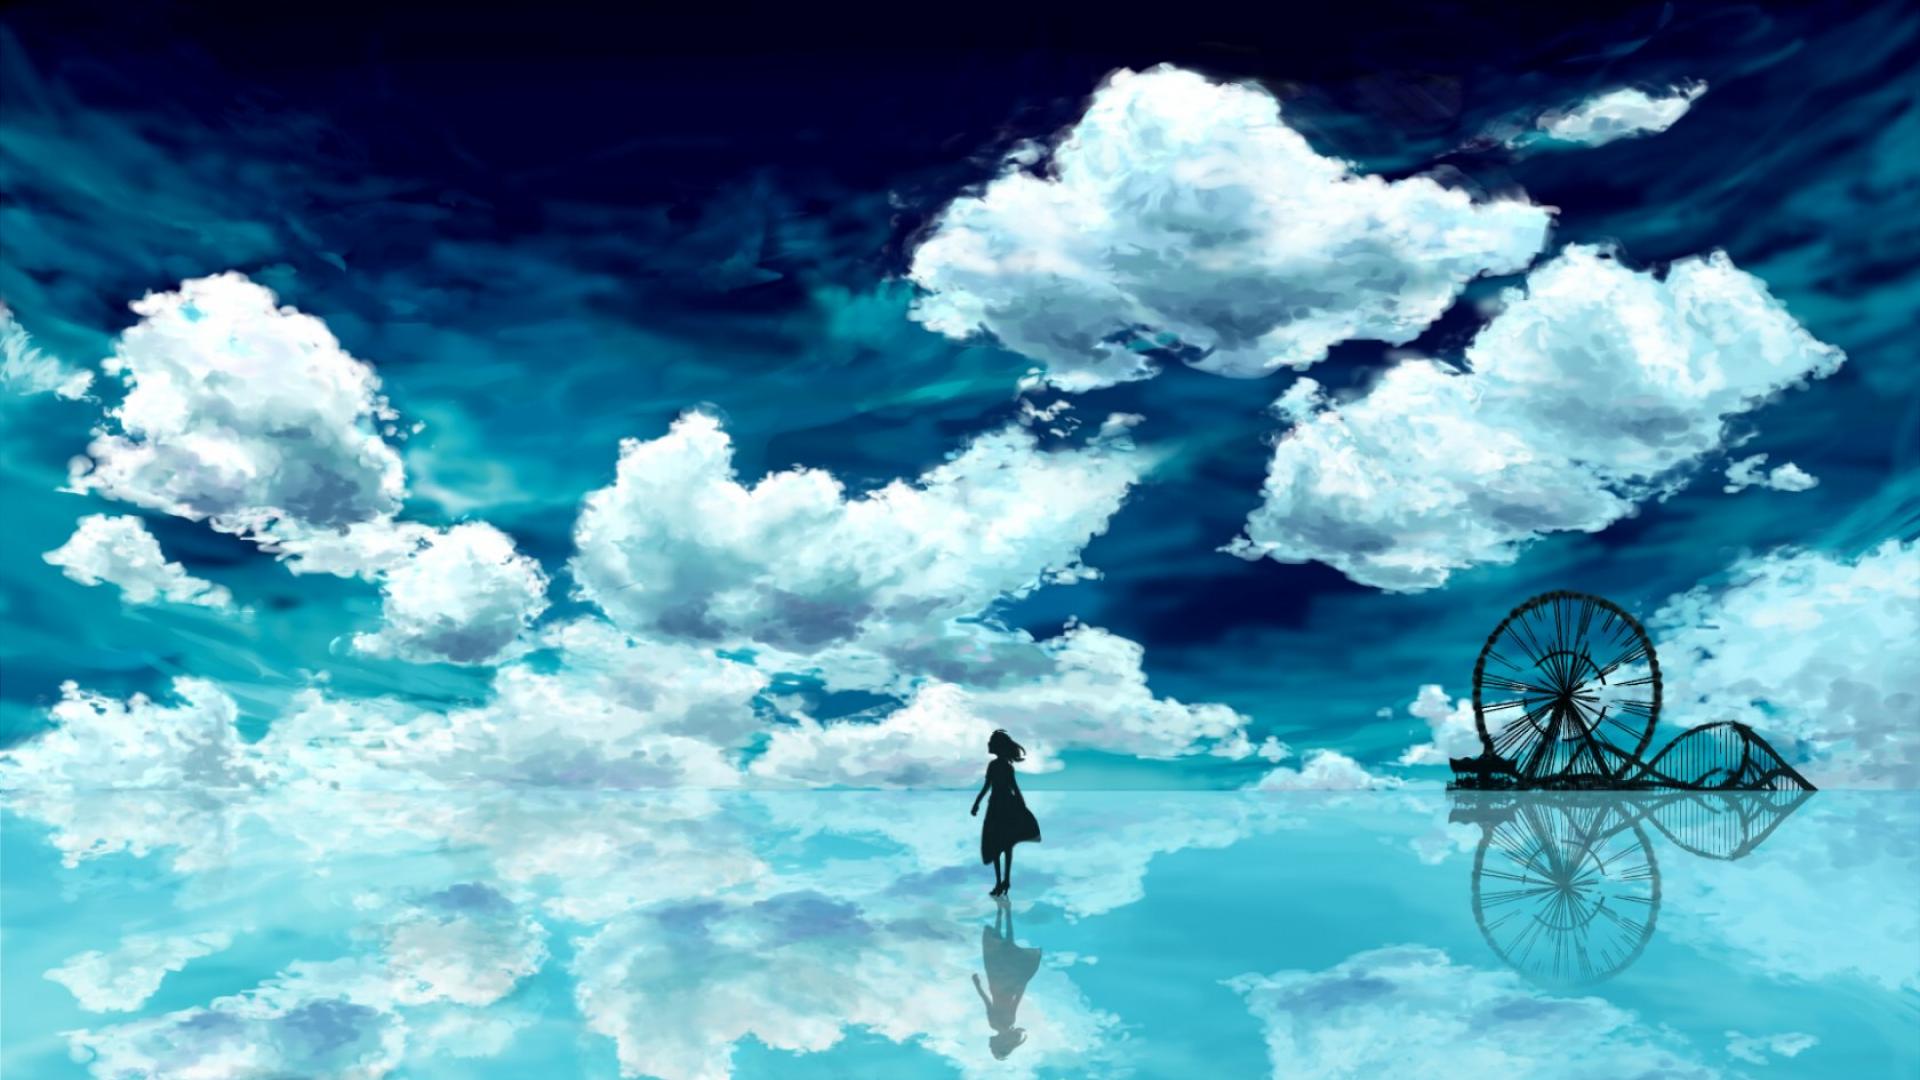 アニメ壁紙フルhd,空,雲,自然の風景,昼間,水